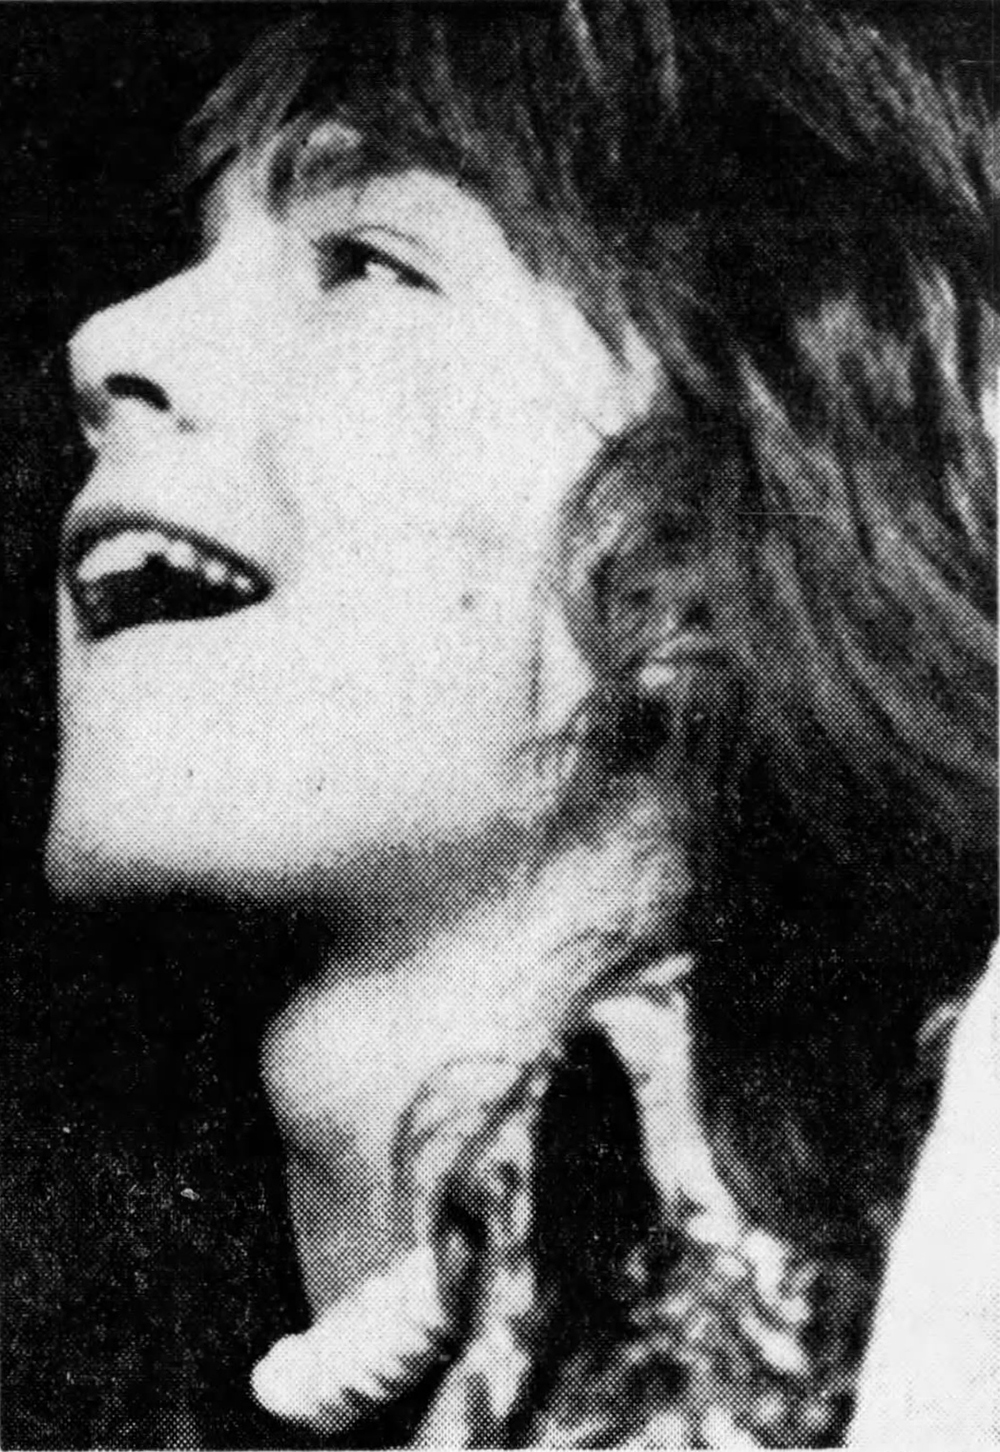 David Cassidy - May 28, 1972